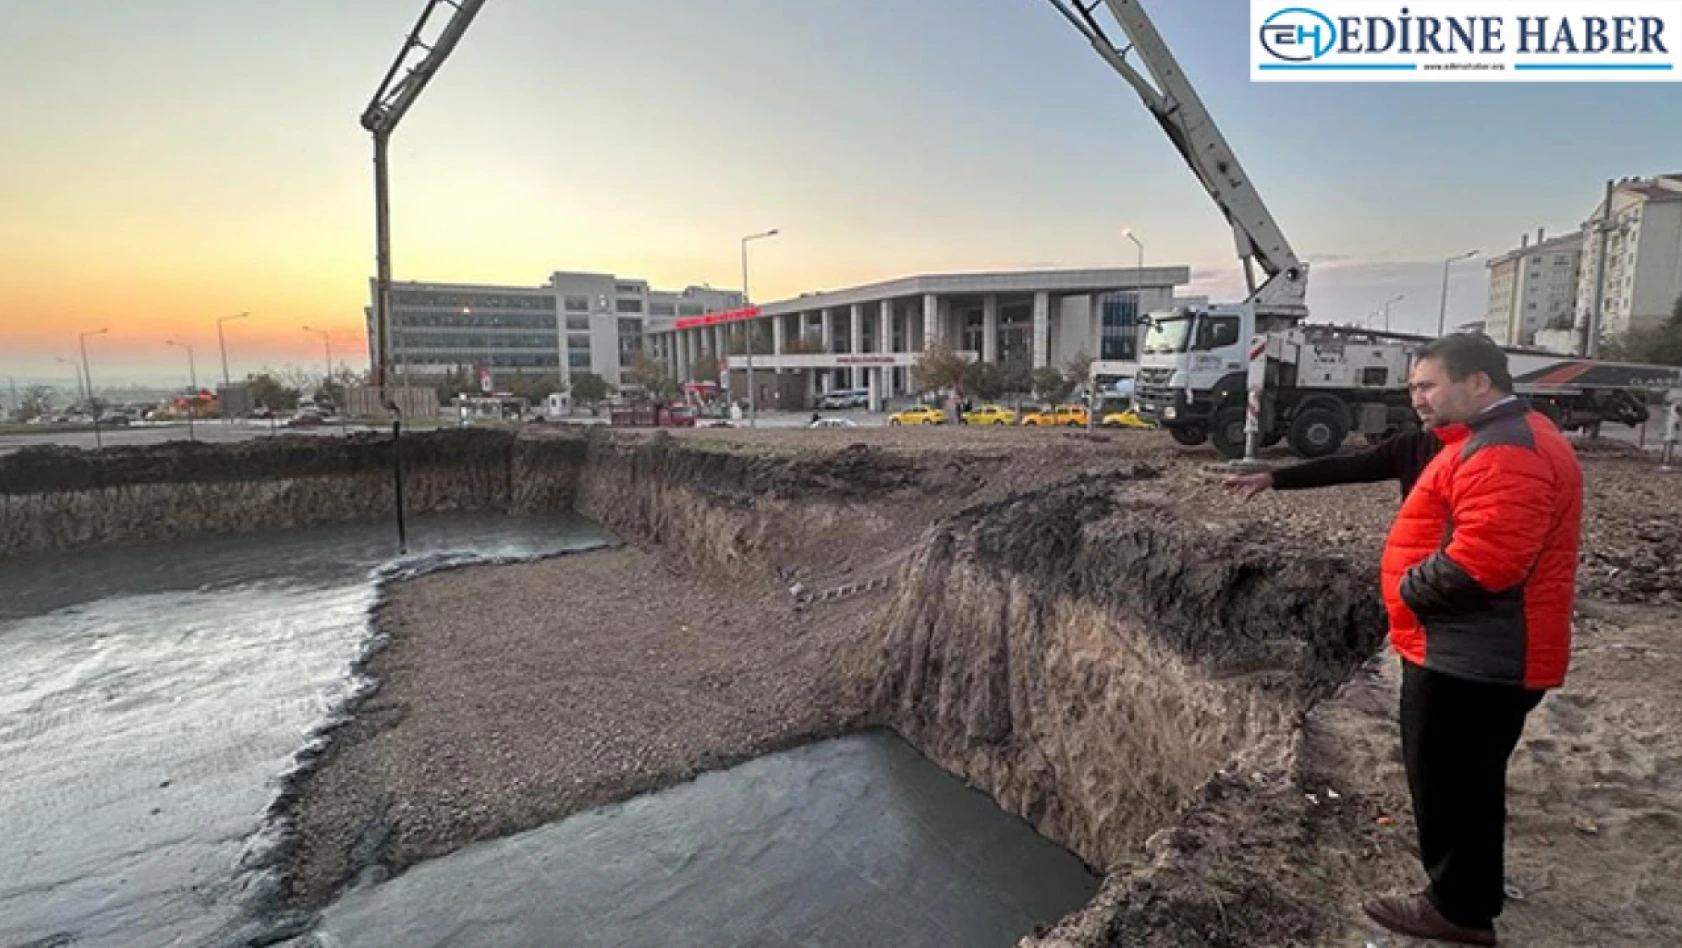 Edirne'de inşa edilecek Kur'an Kursu'nun temeli kazılmaya başlandı